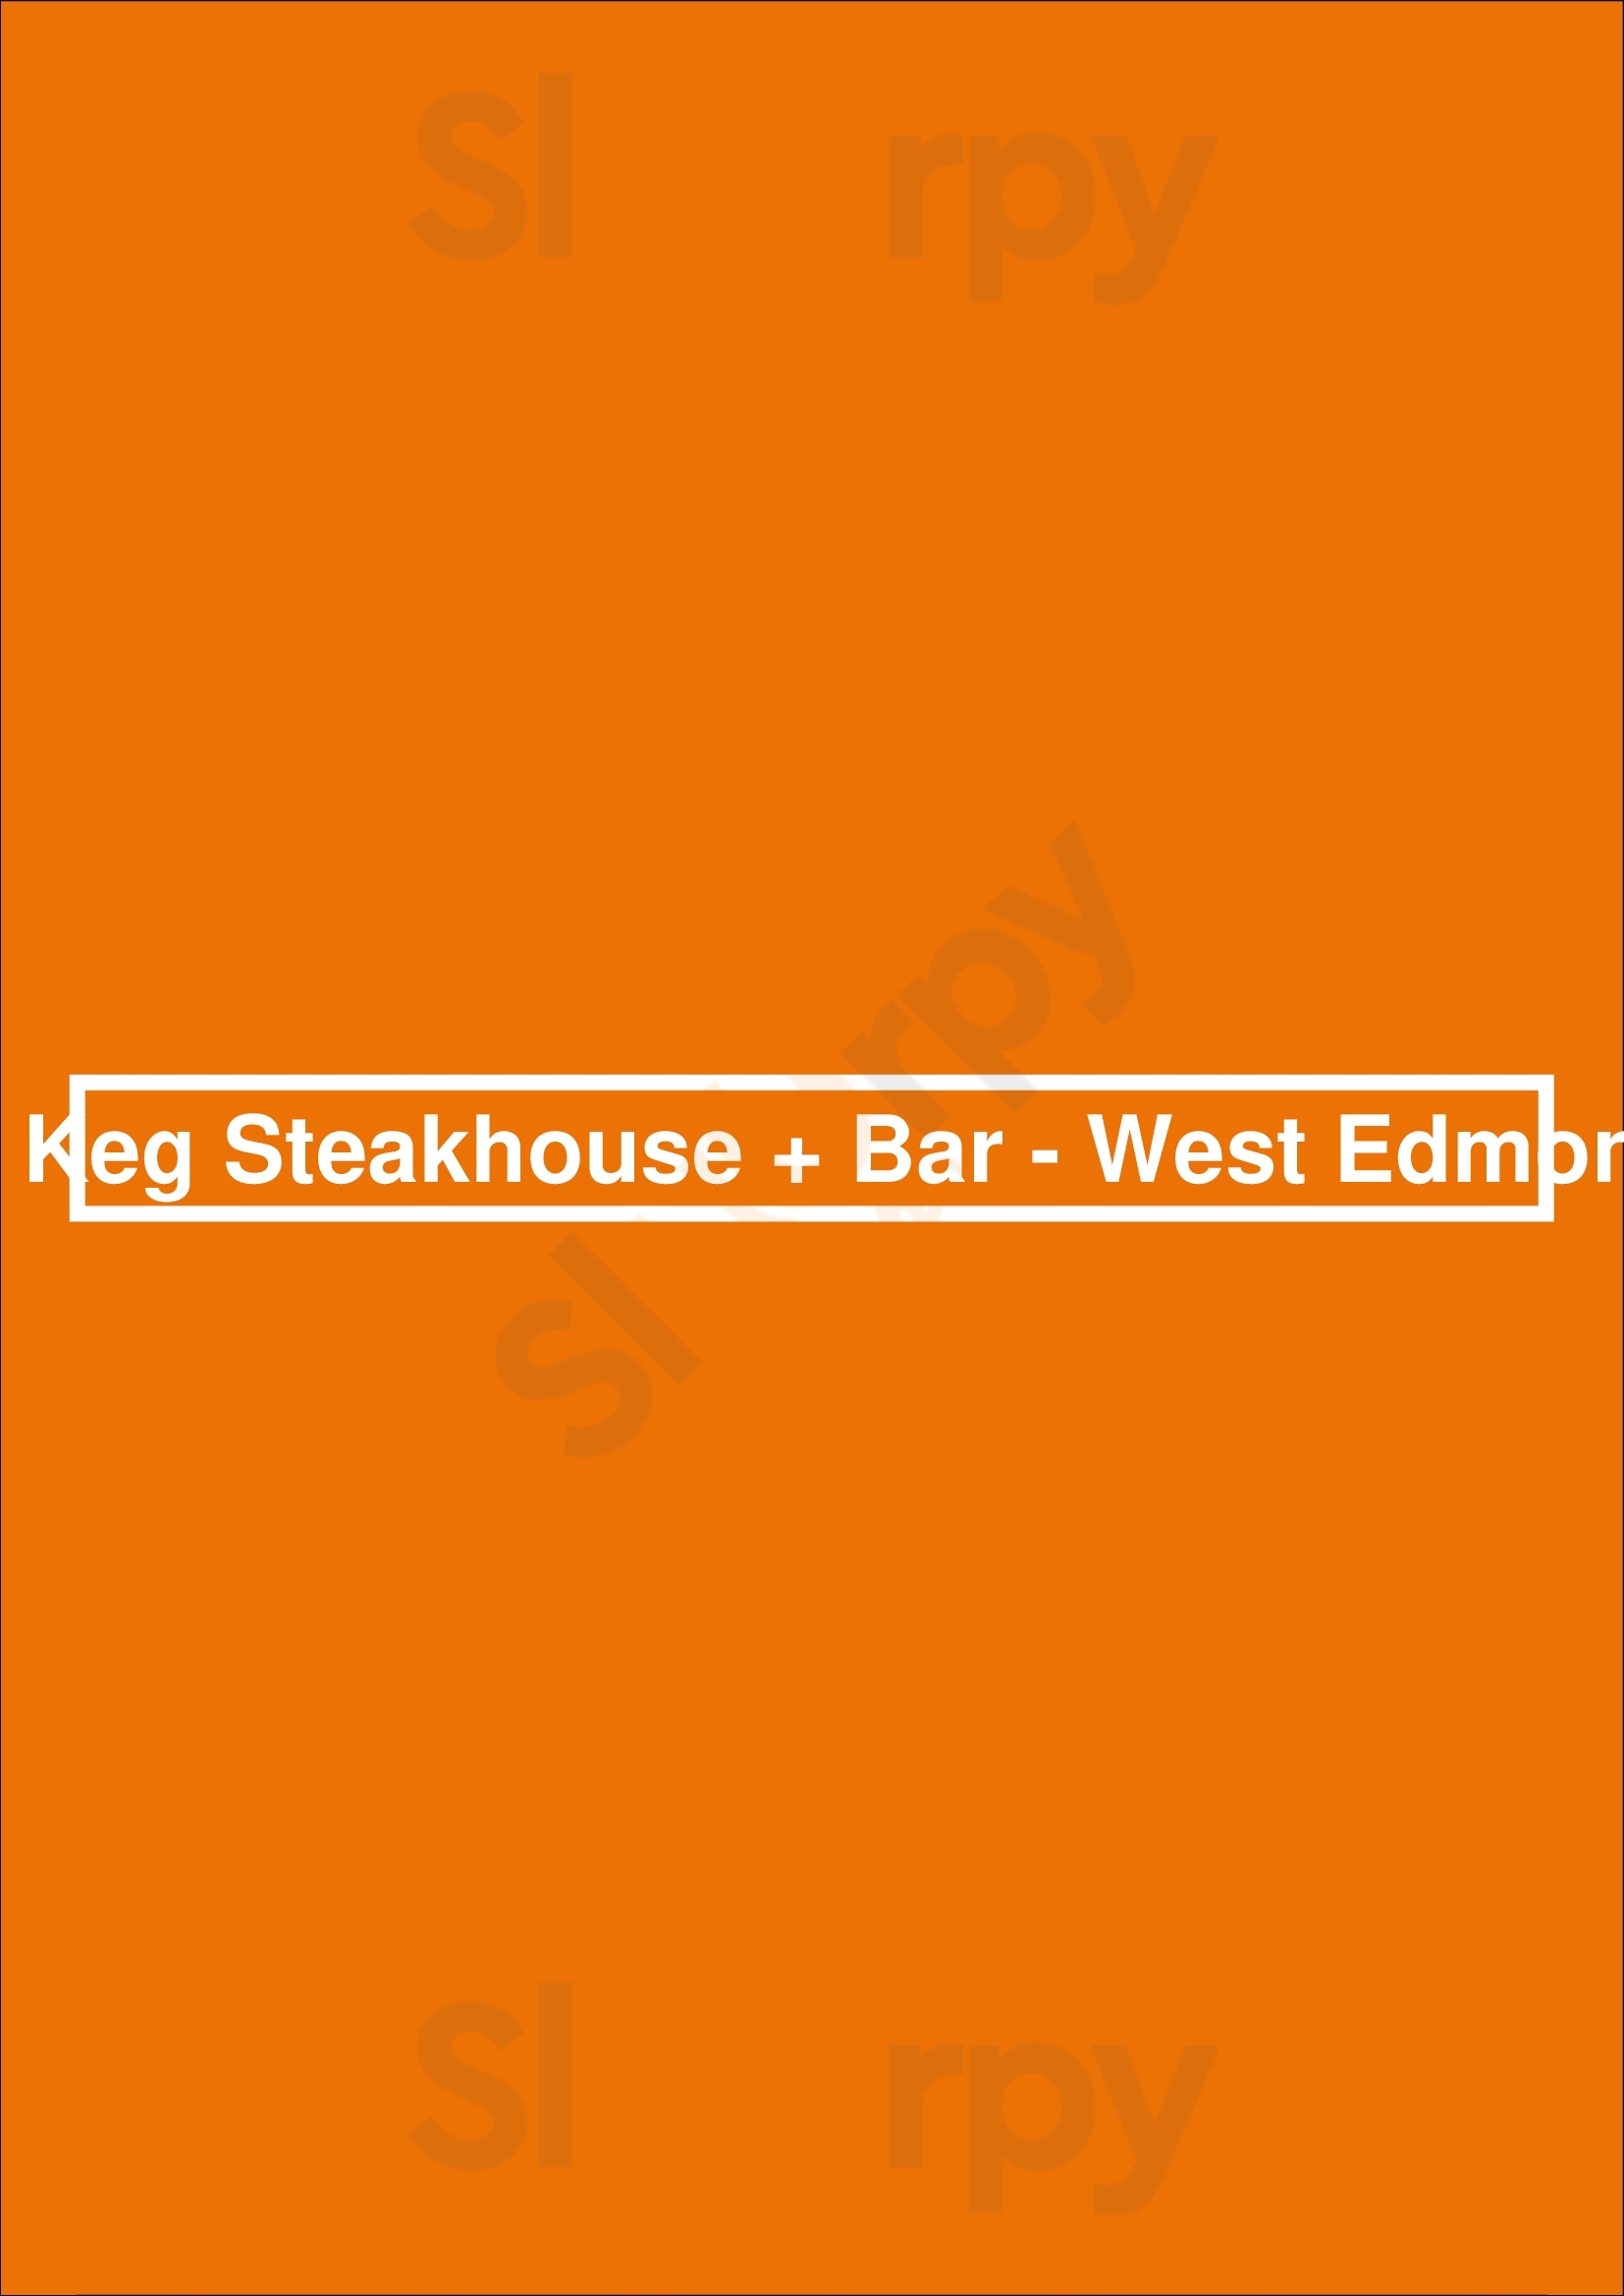 The Keg Steakhouse + Bar - West Edmonton Edmonton Menu - 1